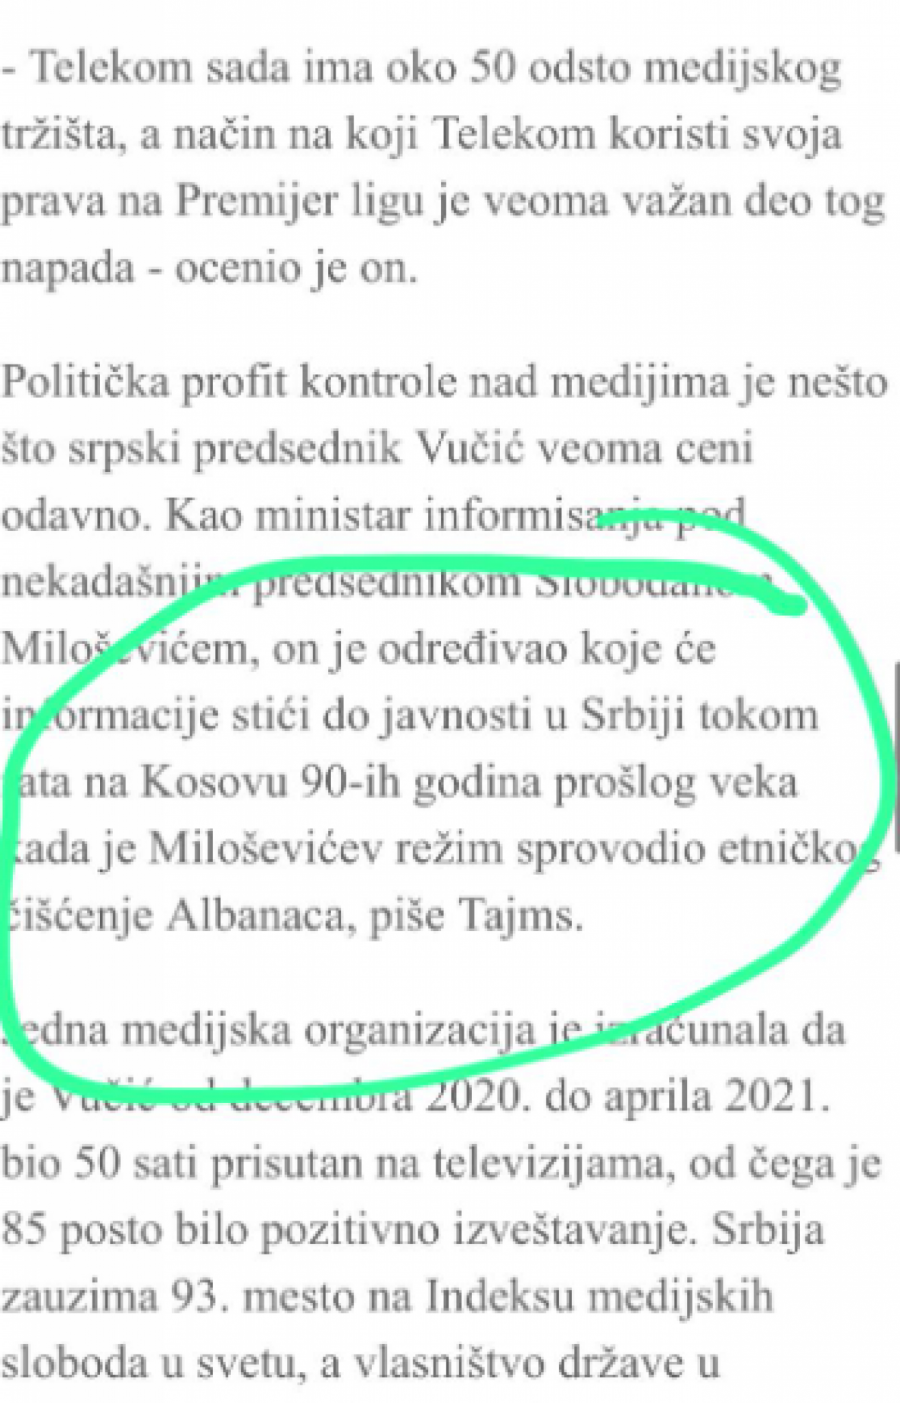 SKANDAL ŠOLAKOVIH MEDIJA! Optužili Srbiju za etničko čišćenje da bi uništili Telekom!